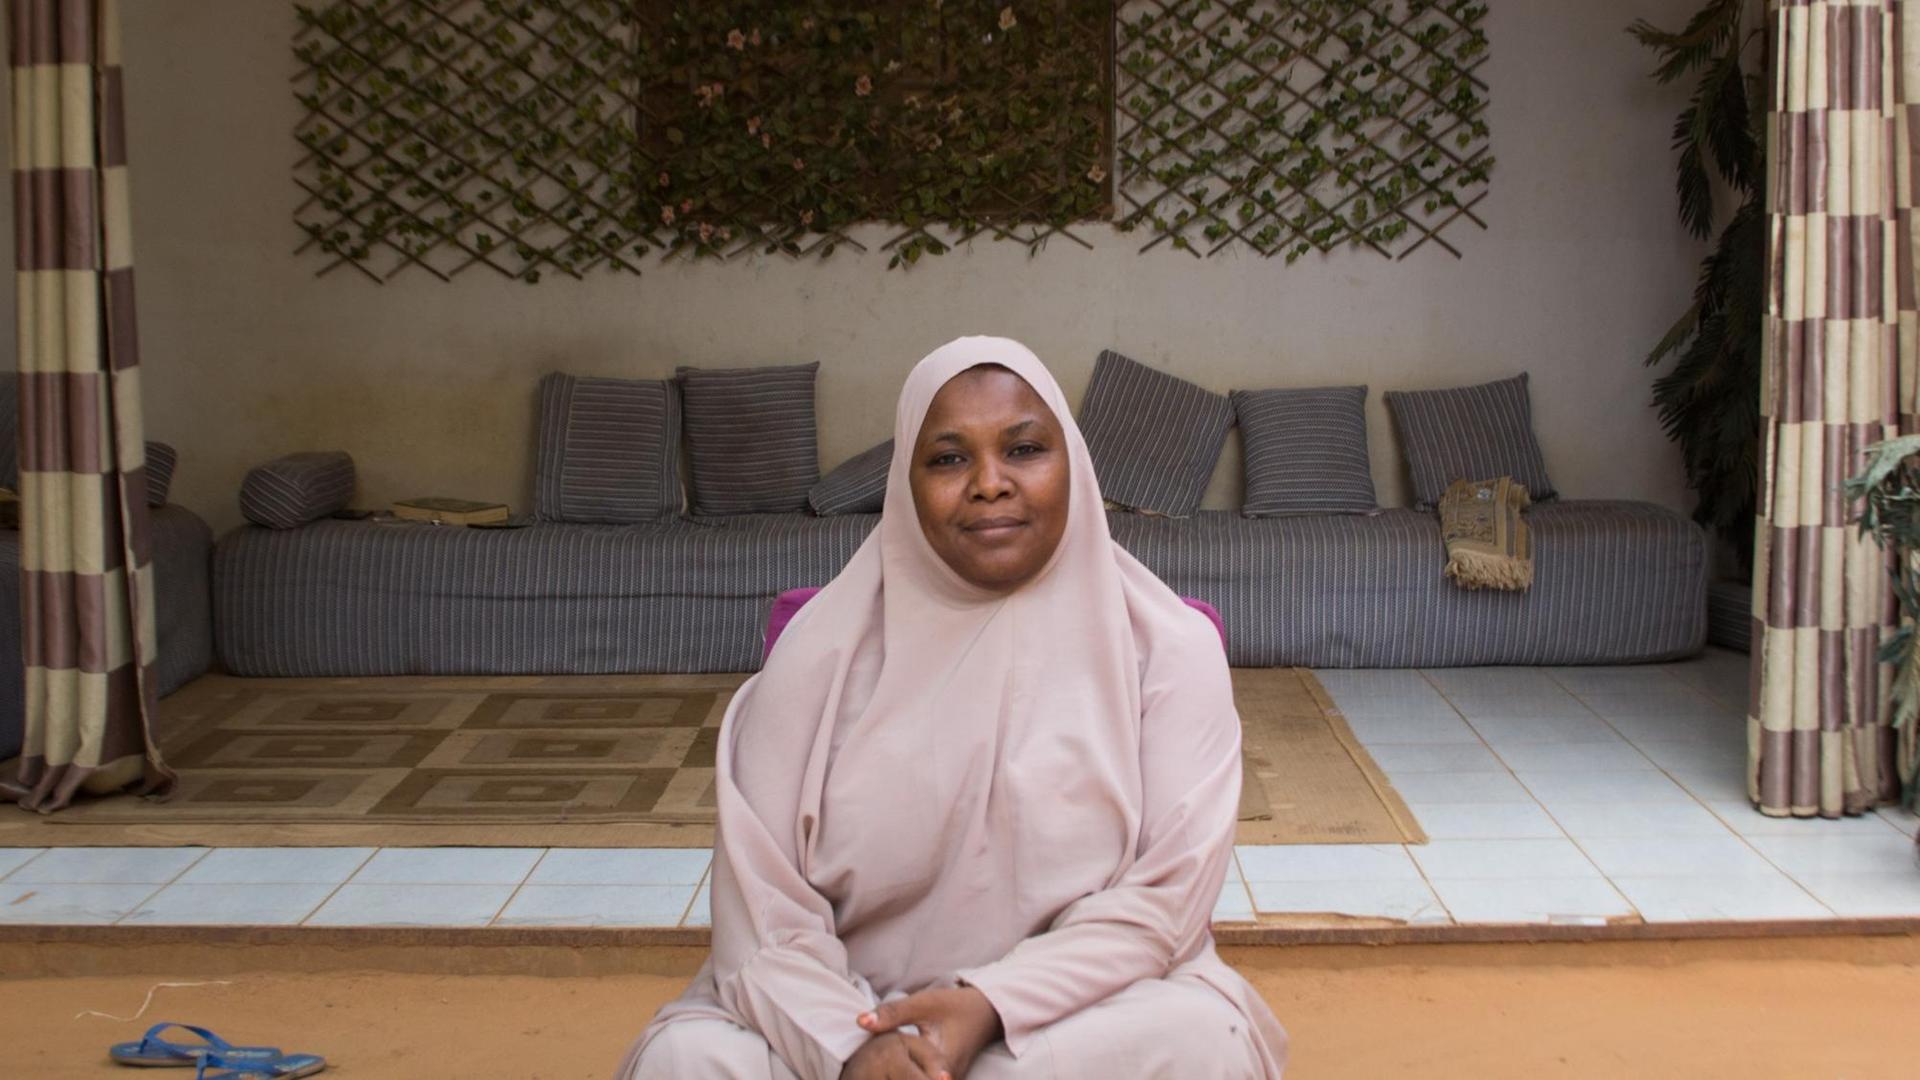 Die Predigerin Malama Sakina, in mauvefarbenes Tuch und Kopftuch gehüllt, sitzt in ihrem Haus vor einer mit Vorhängen gerahmten Nische, in der unter dem Fenster ein Sofa mit vielen kleinen Kissen steht.